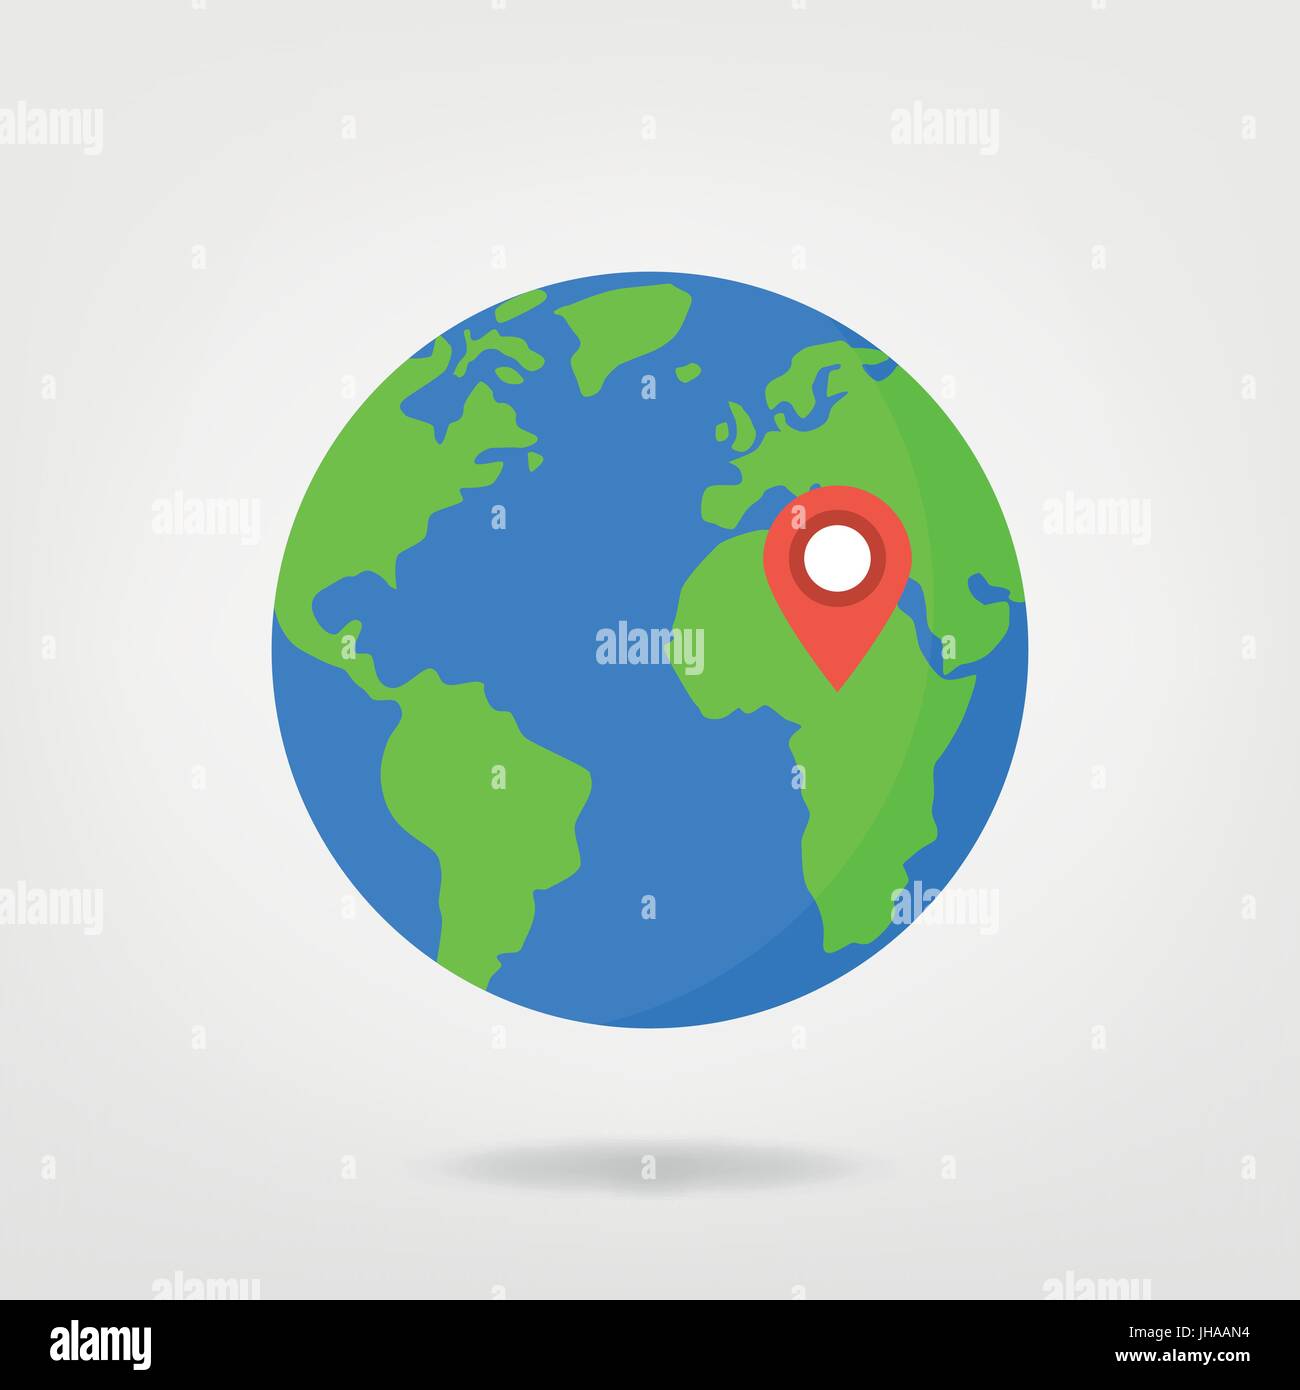 Afrika - Standort Pin auf Welt-Illustration. Weltkarte / globe mit rote Standortmarkierung. Stock Vektor